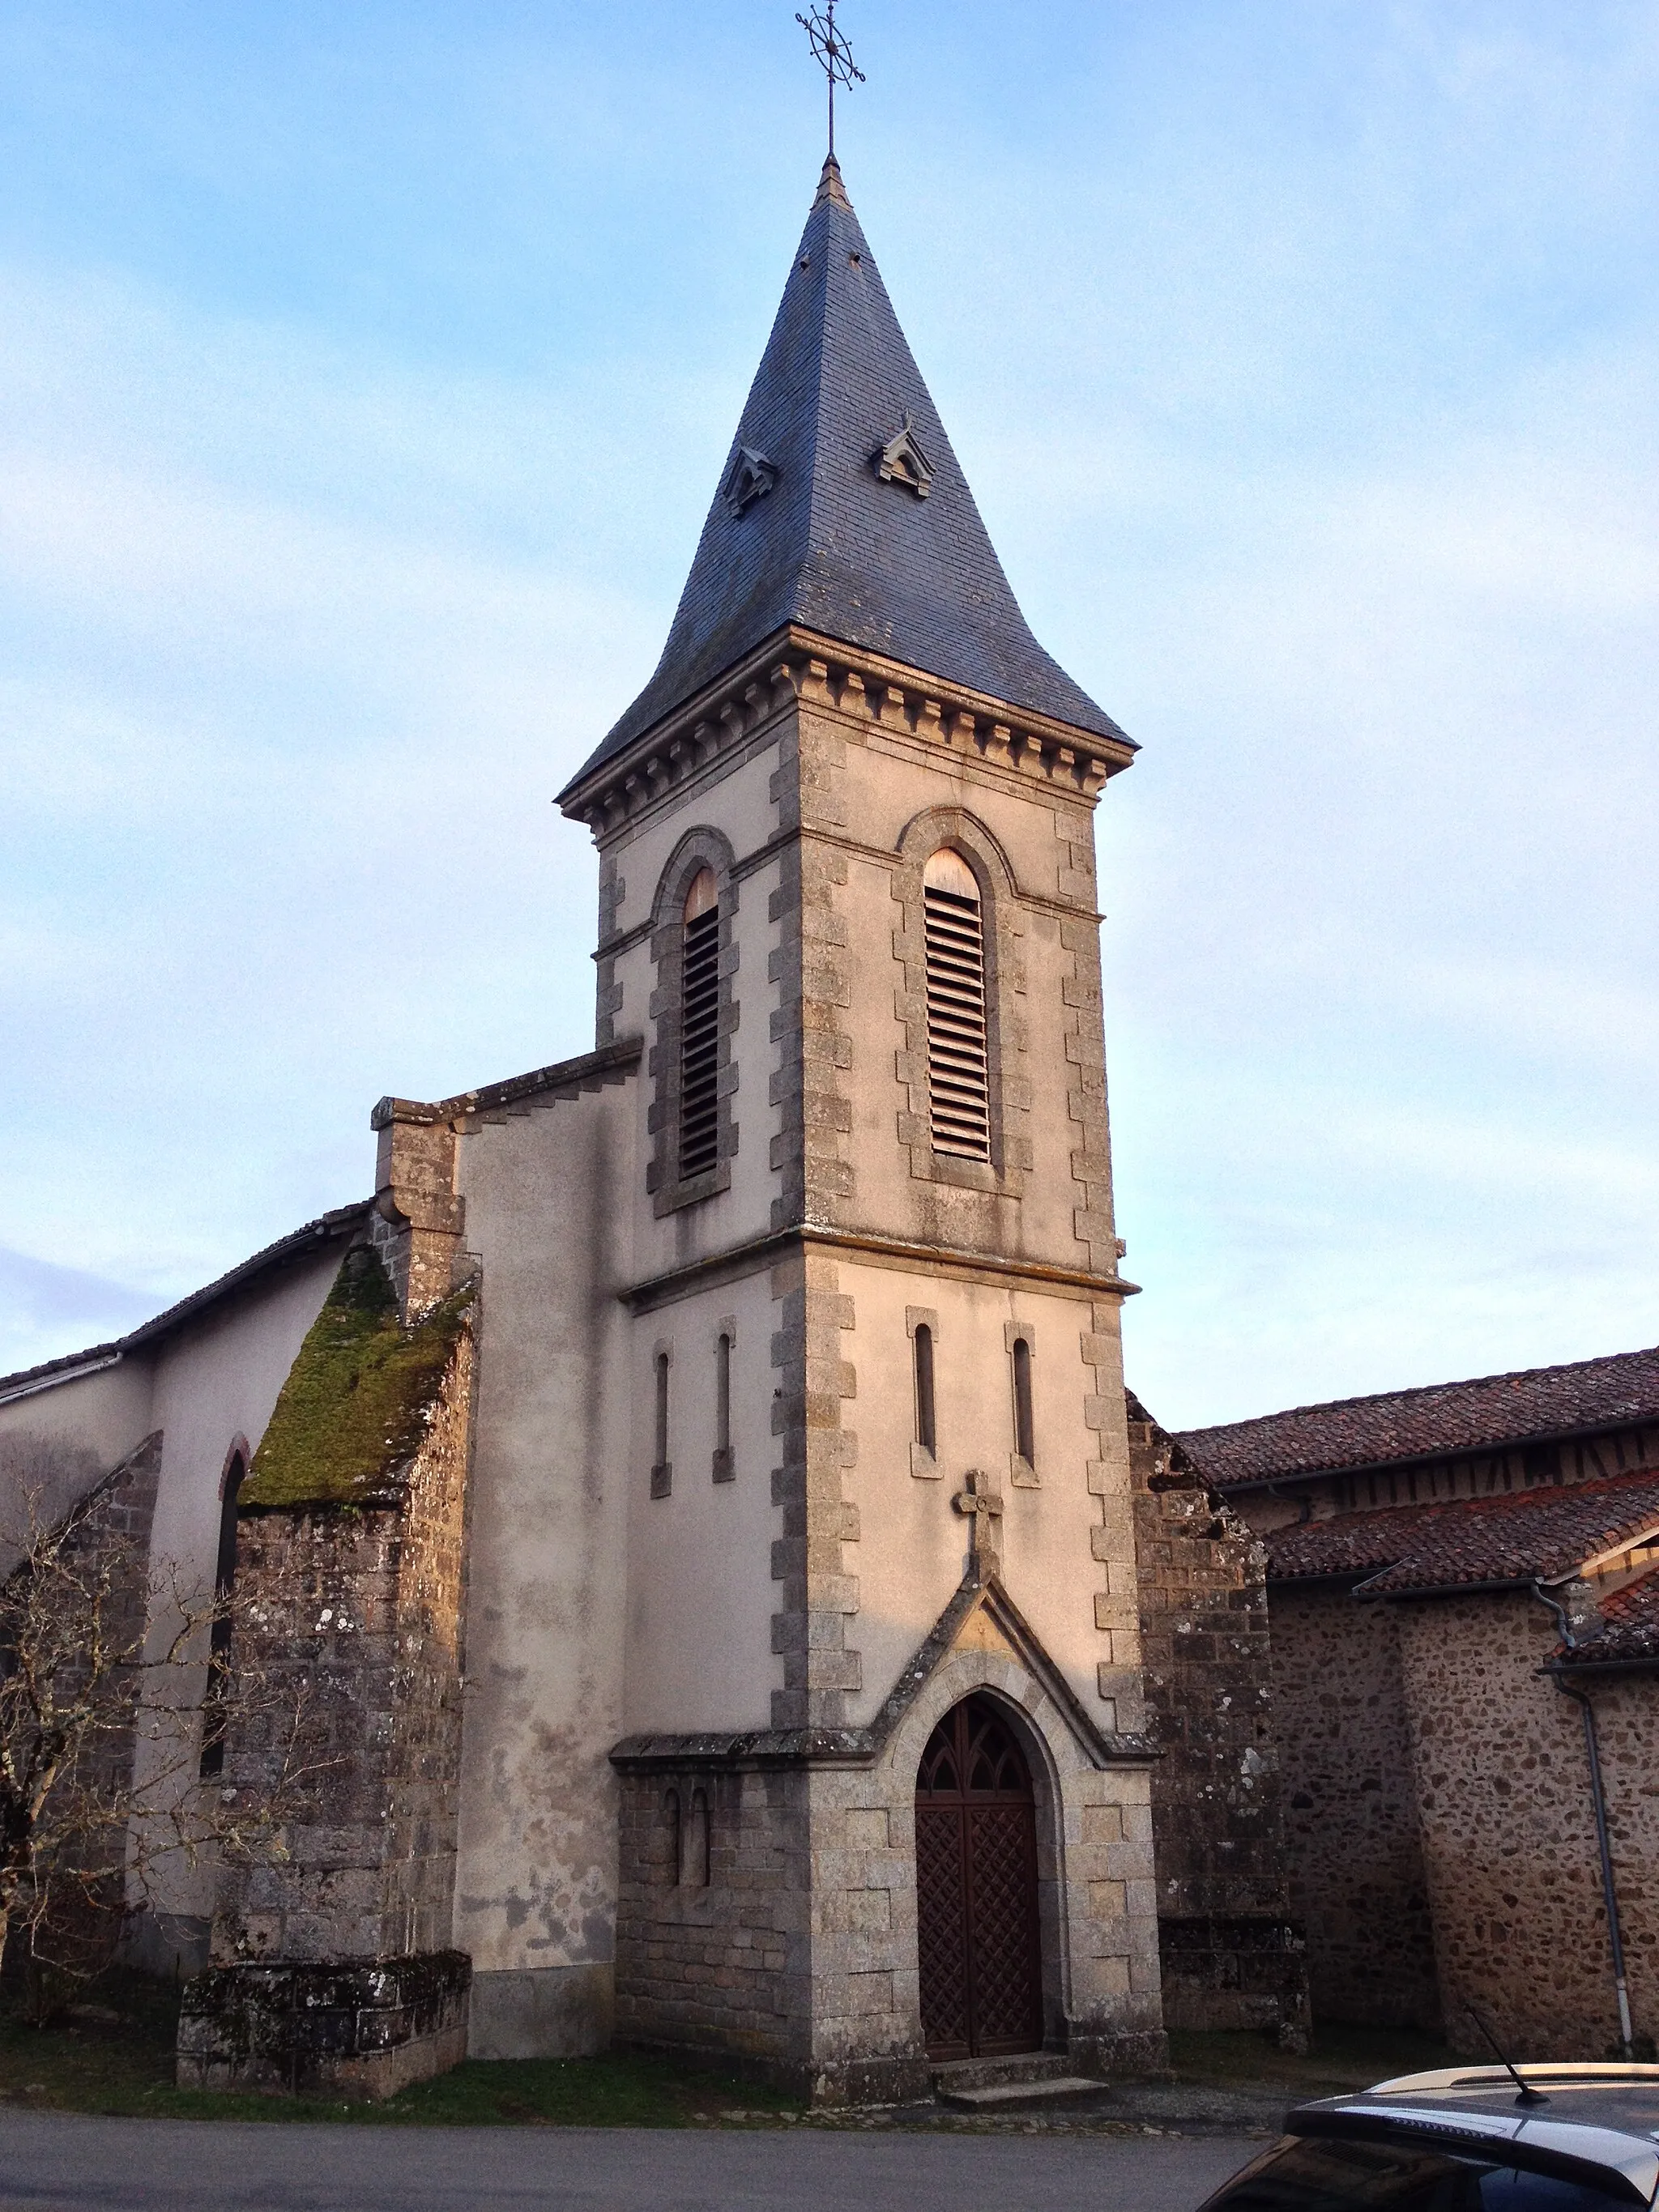 Image of Saint-Priest-sous-Aixe